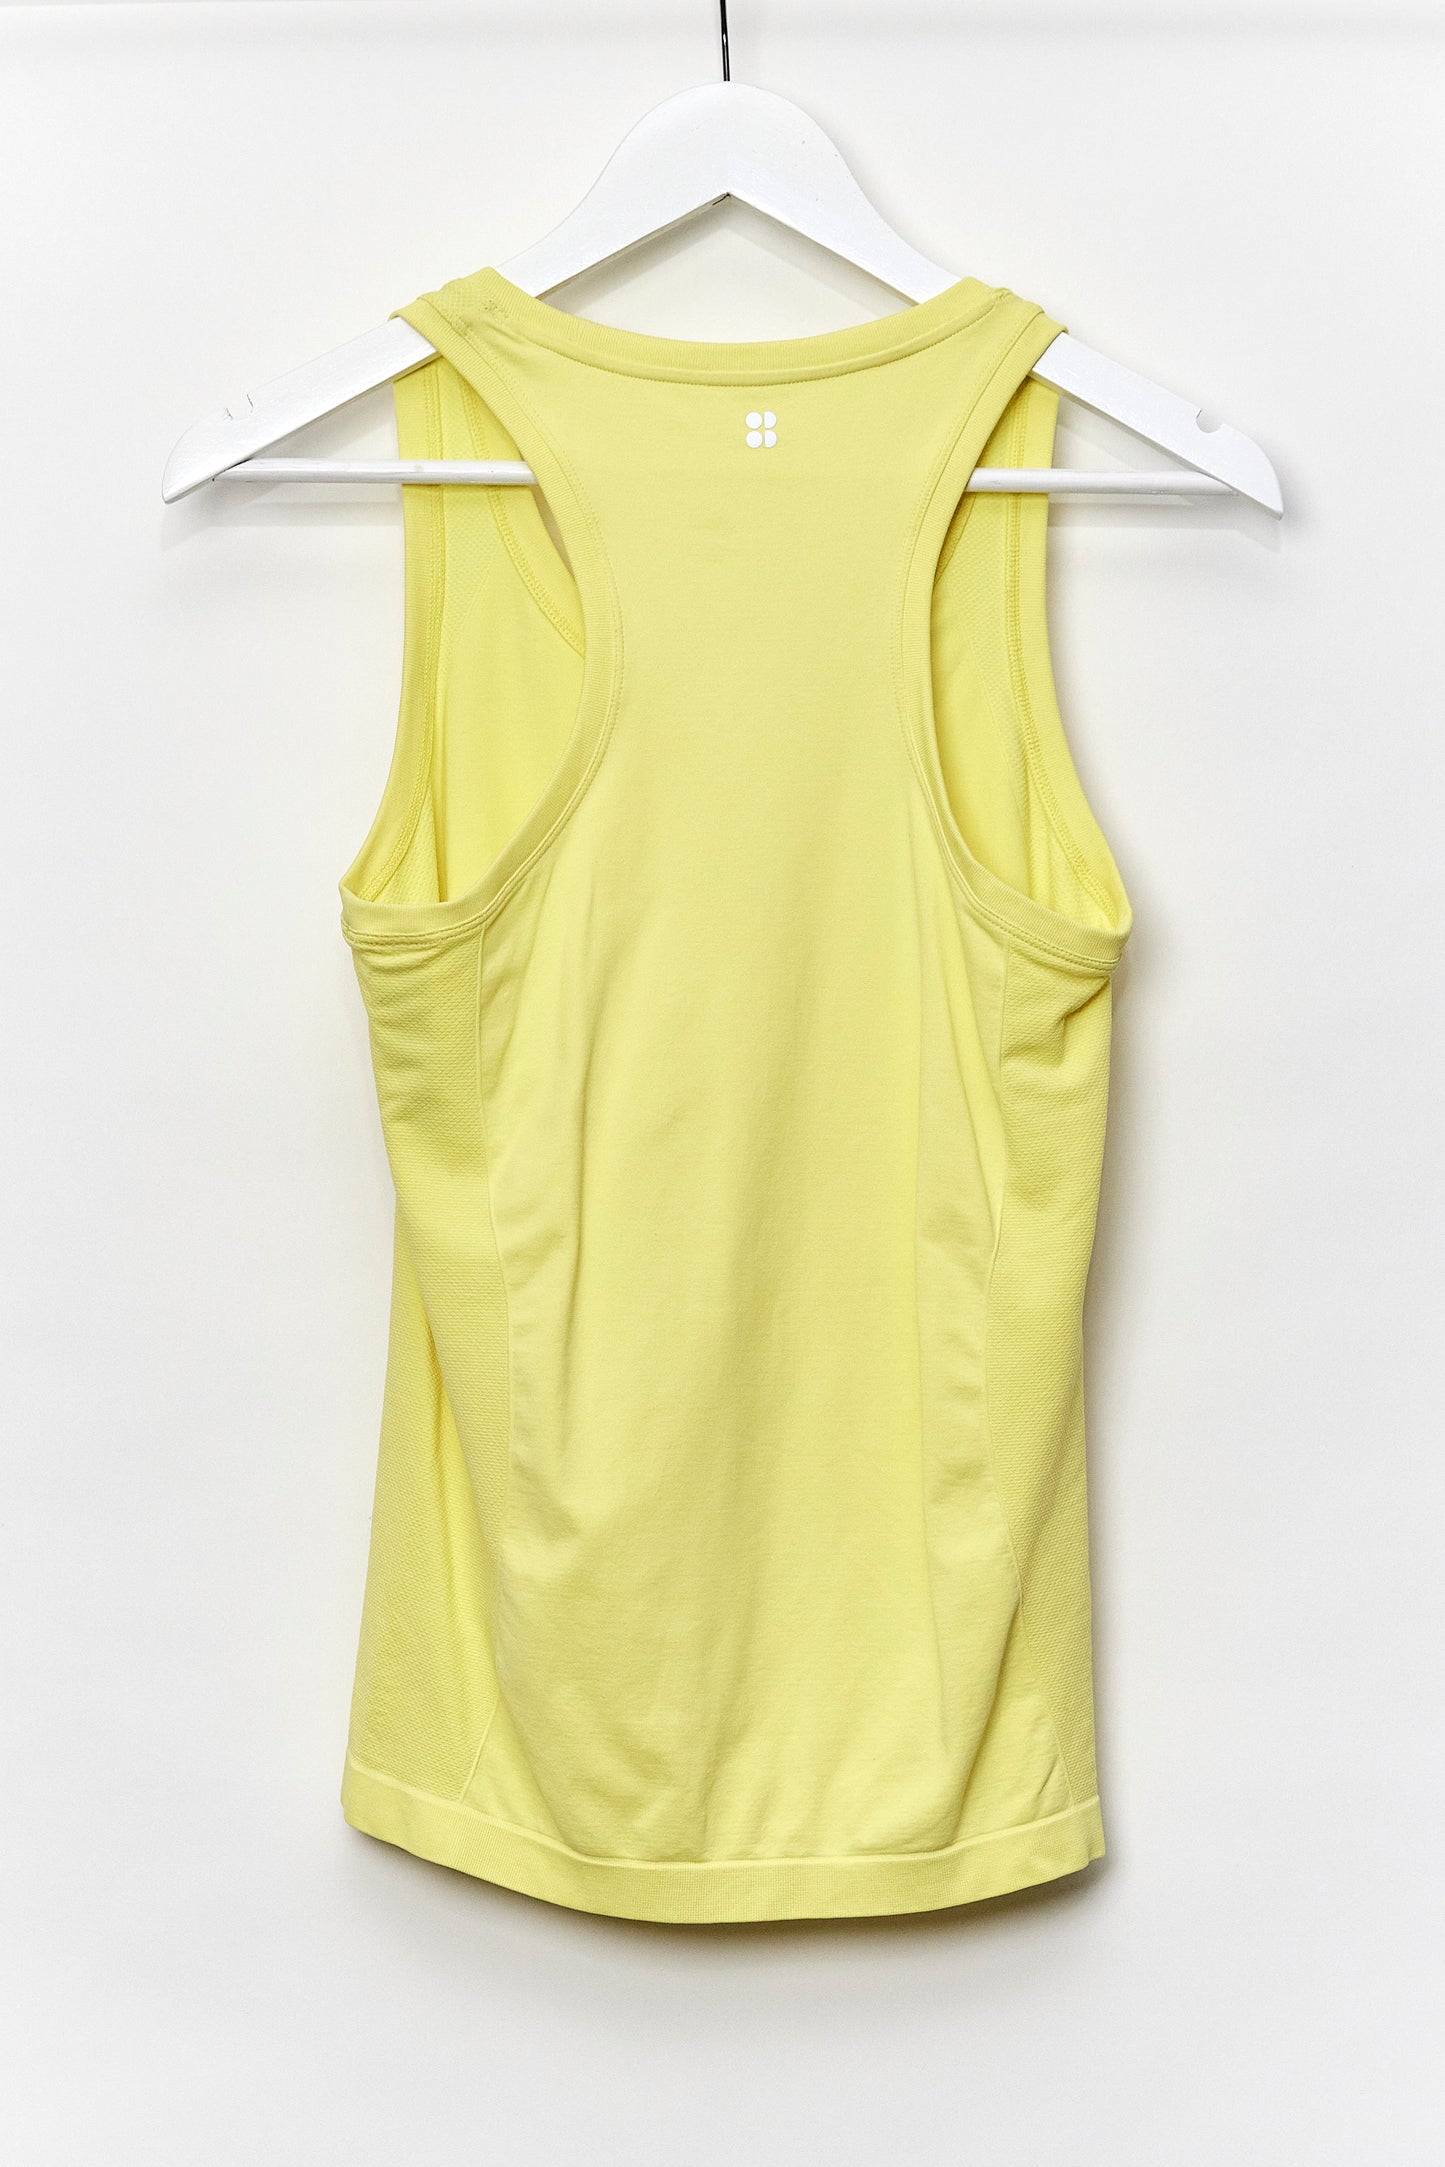 Womens Sweaty Betty Yellow Vest Size Small